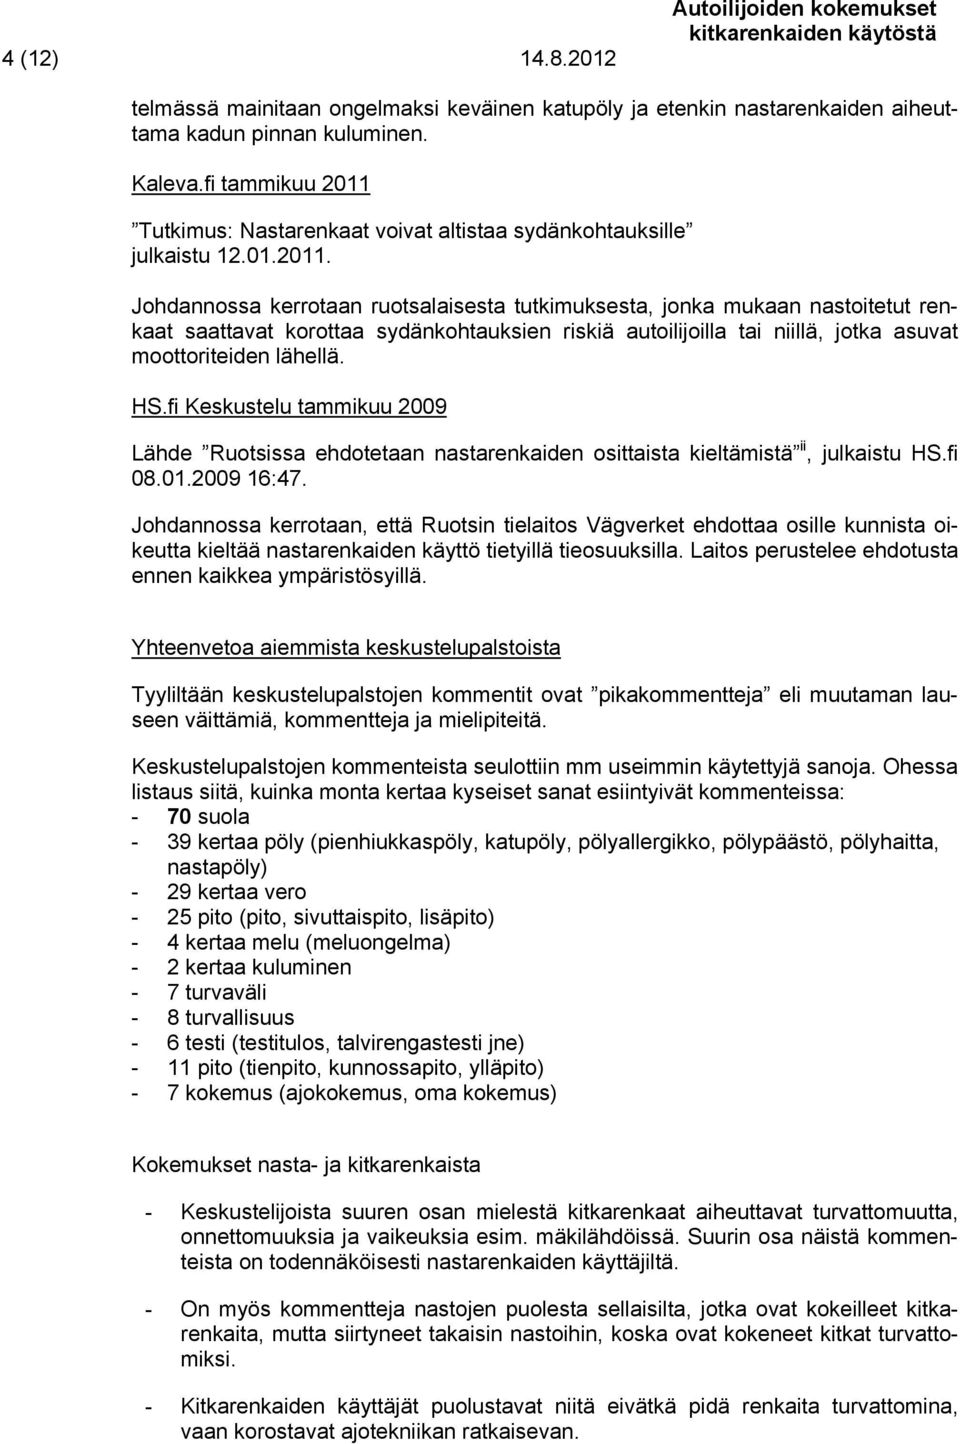 Tutkimus: Nastarenkaat voivat altistaa sydänkohtauksille julkaistu 12.01.2011.